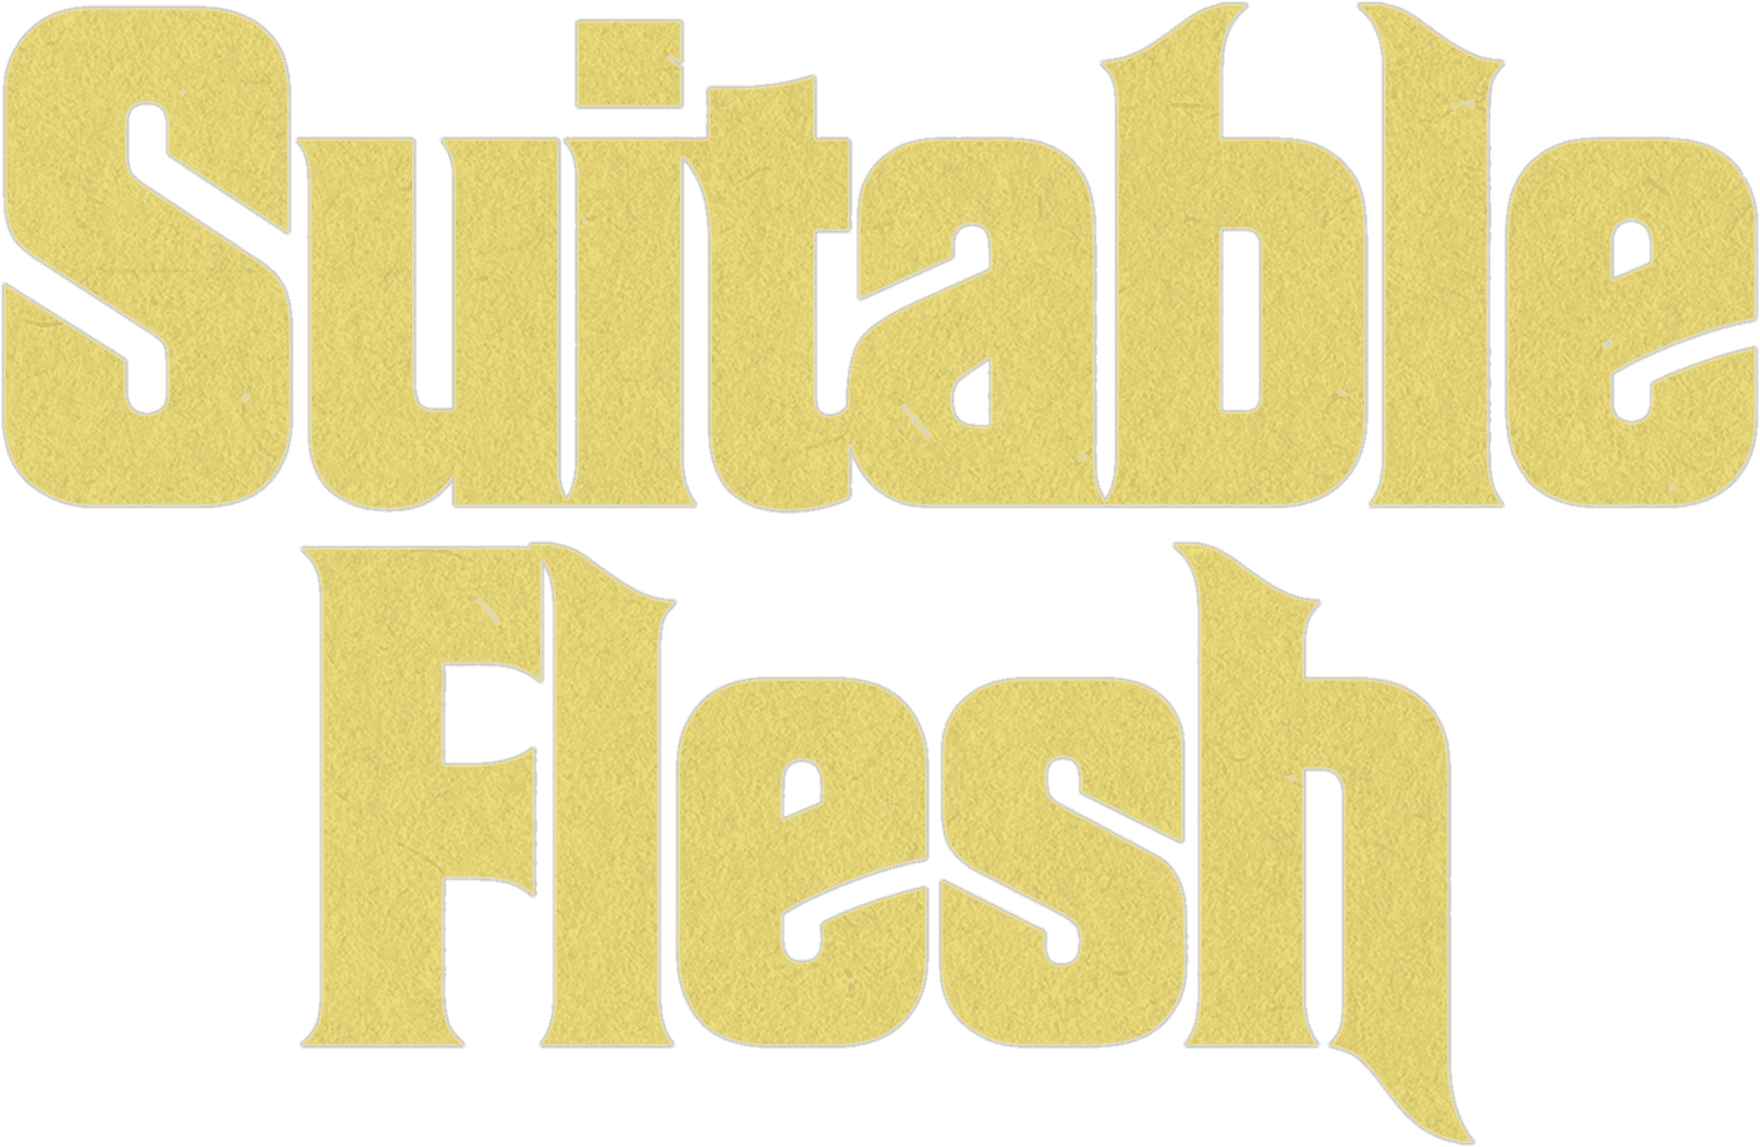 Suitable Flesh logo